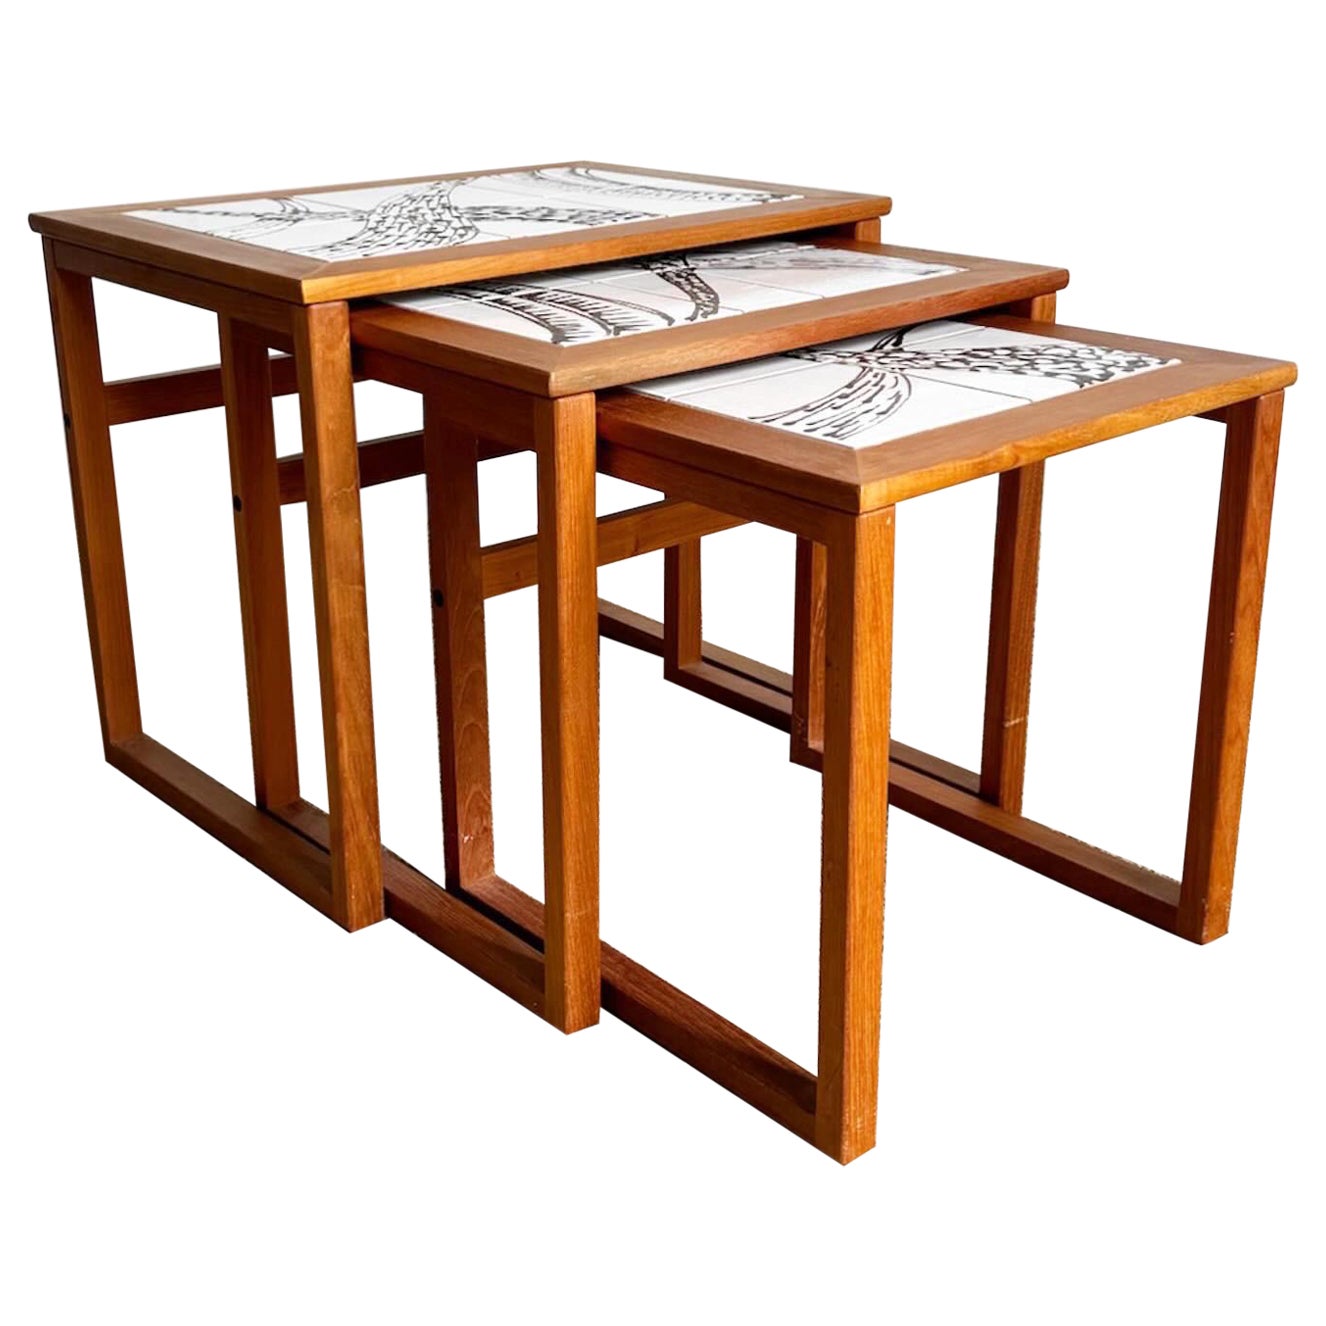 Danish Modern Nesting Tables by Mobelfabrikken Toften For Sale